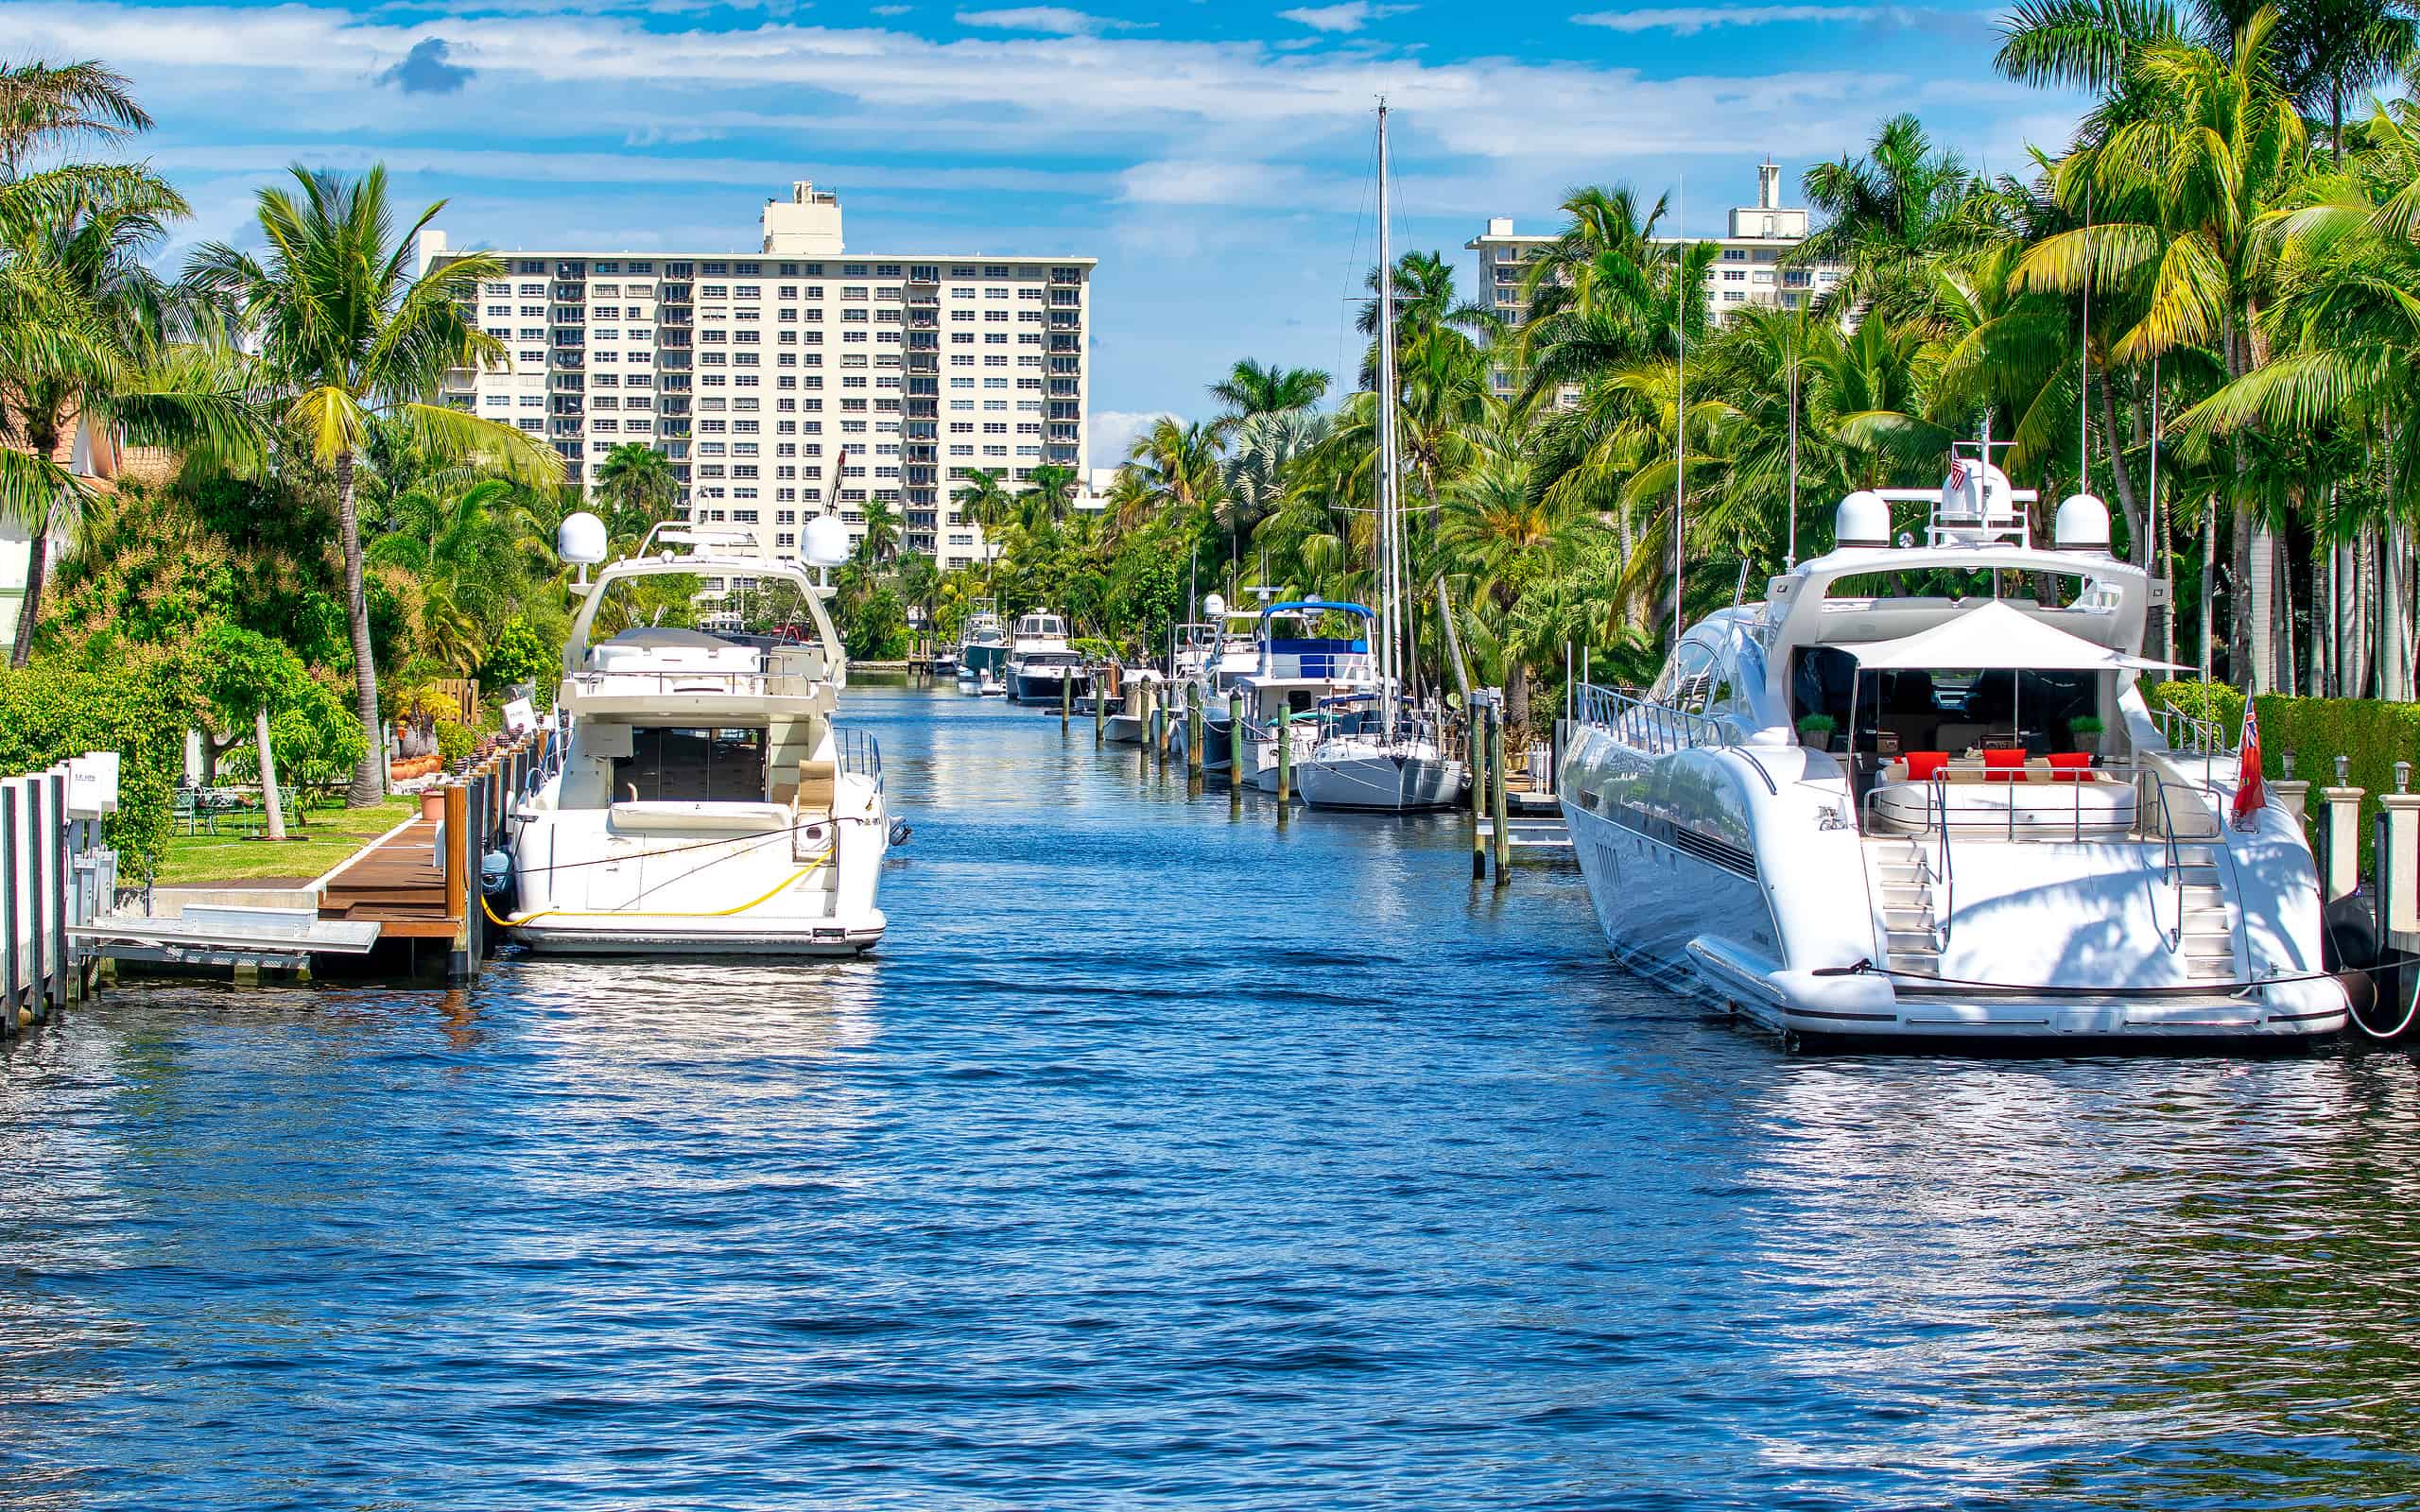 Barche lungo i canali di Fort Lauderdale in una giornata di sole, Florida.